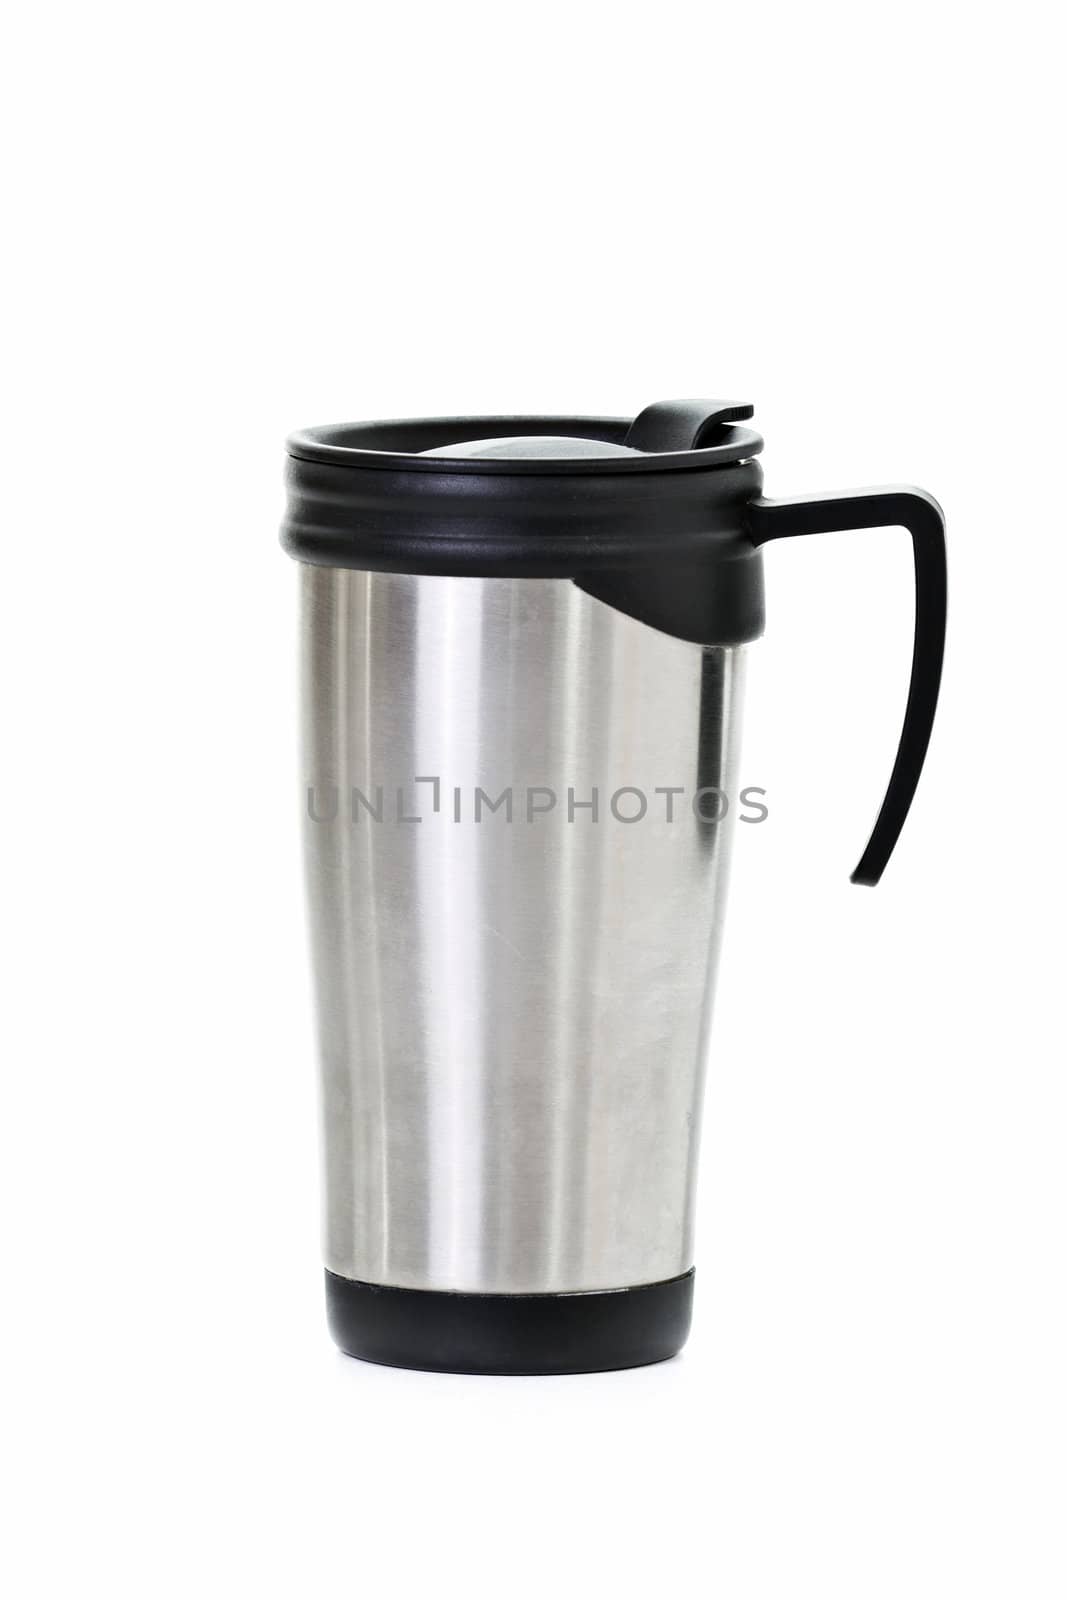 Coffee Mug isolated on white background